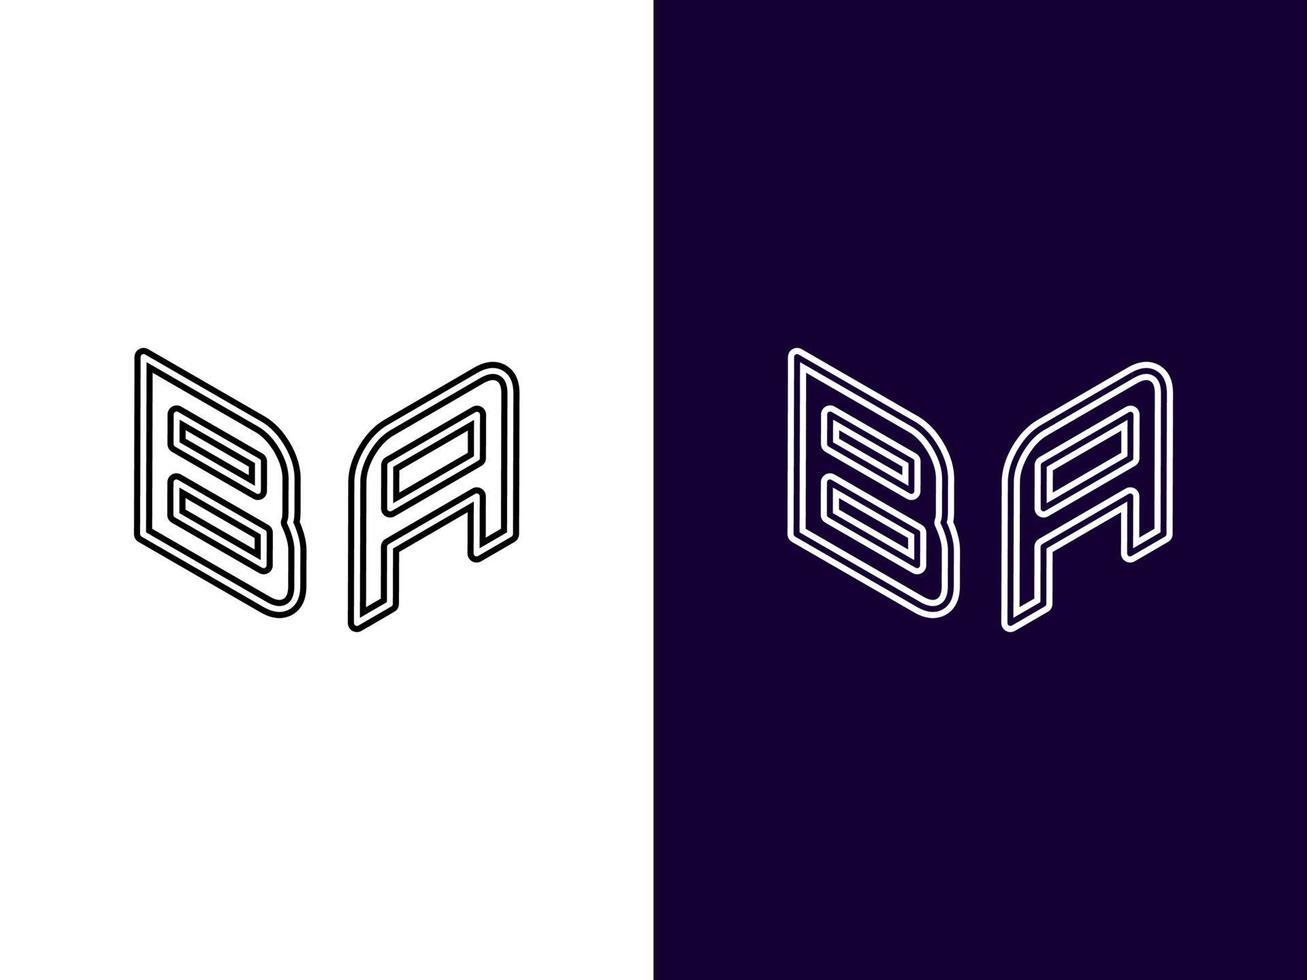 letra inicial ba design de logotipo 3d minimalista e moderno vetor